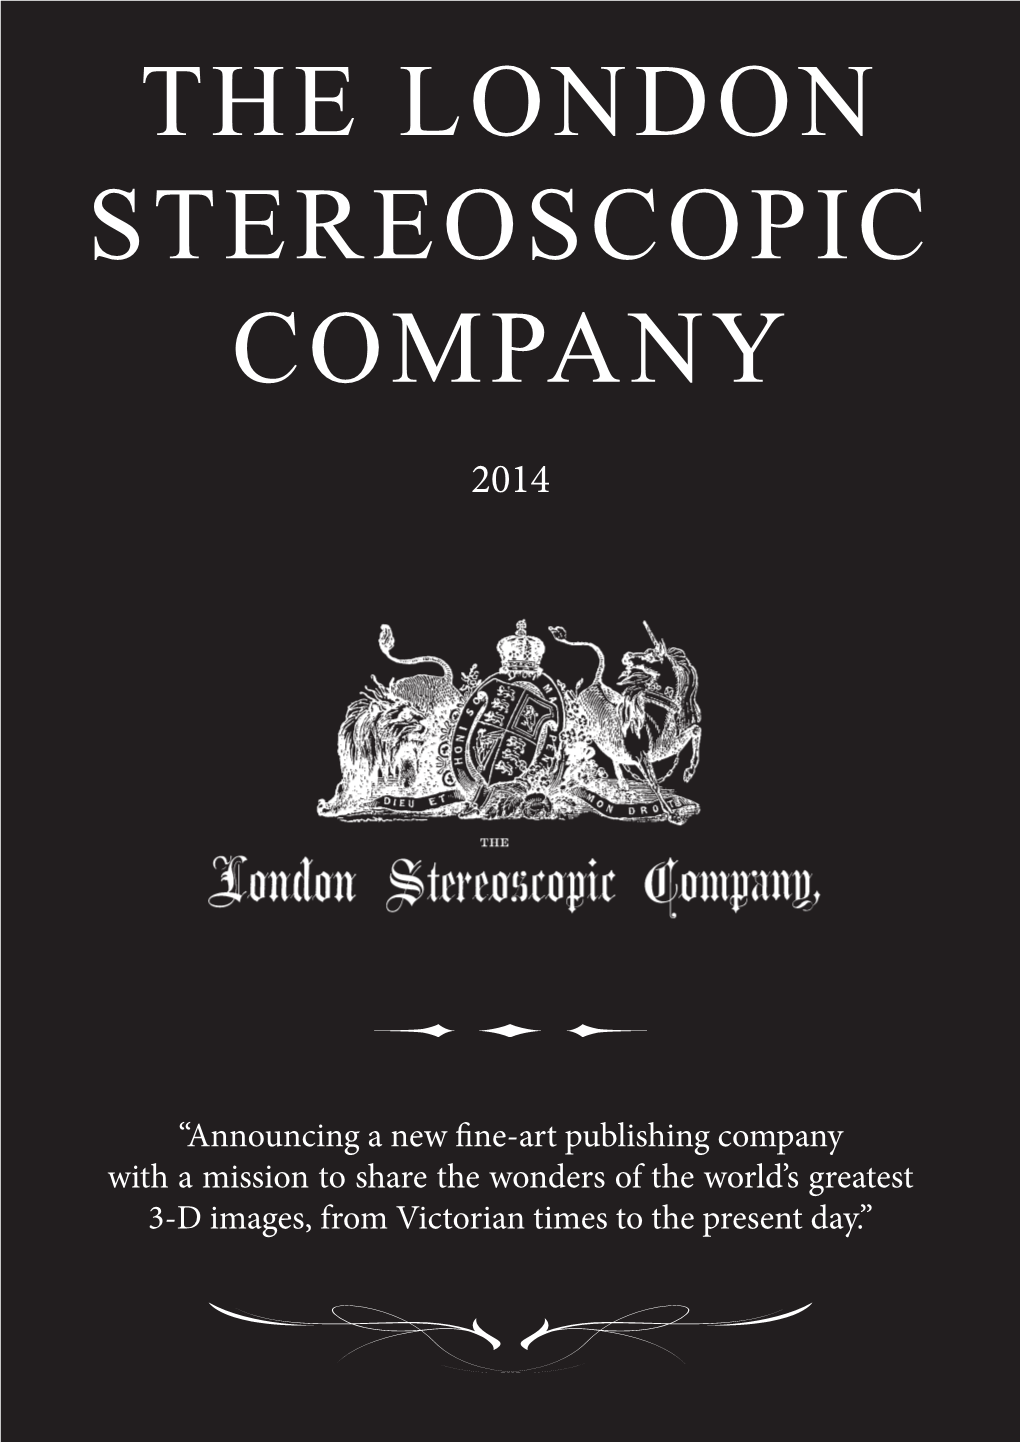 The London Stereoscopic Company